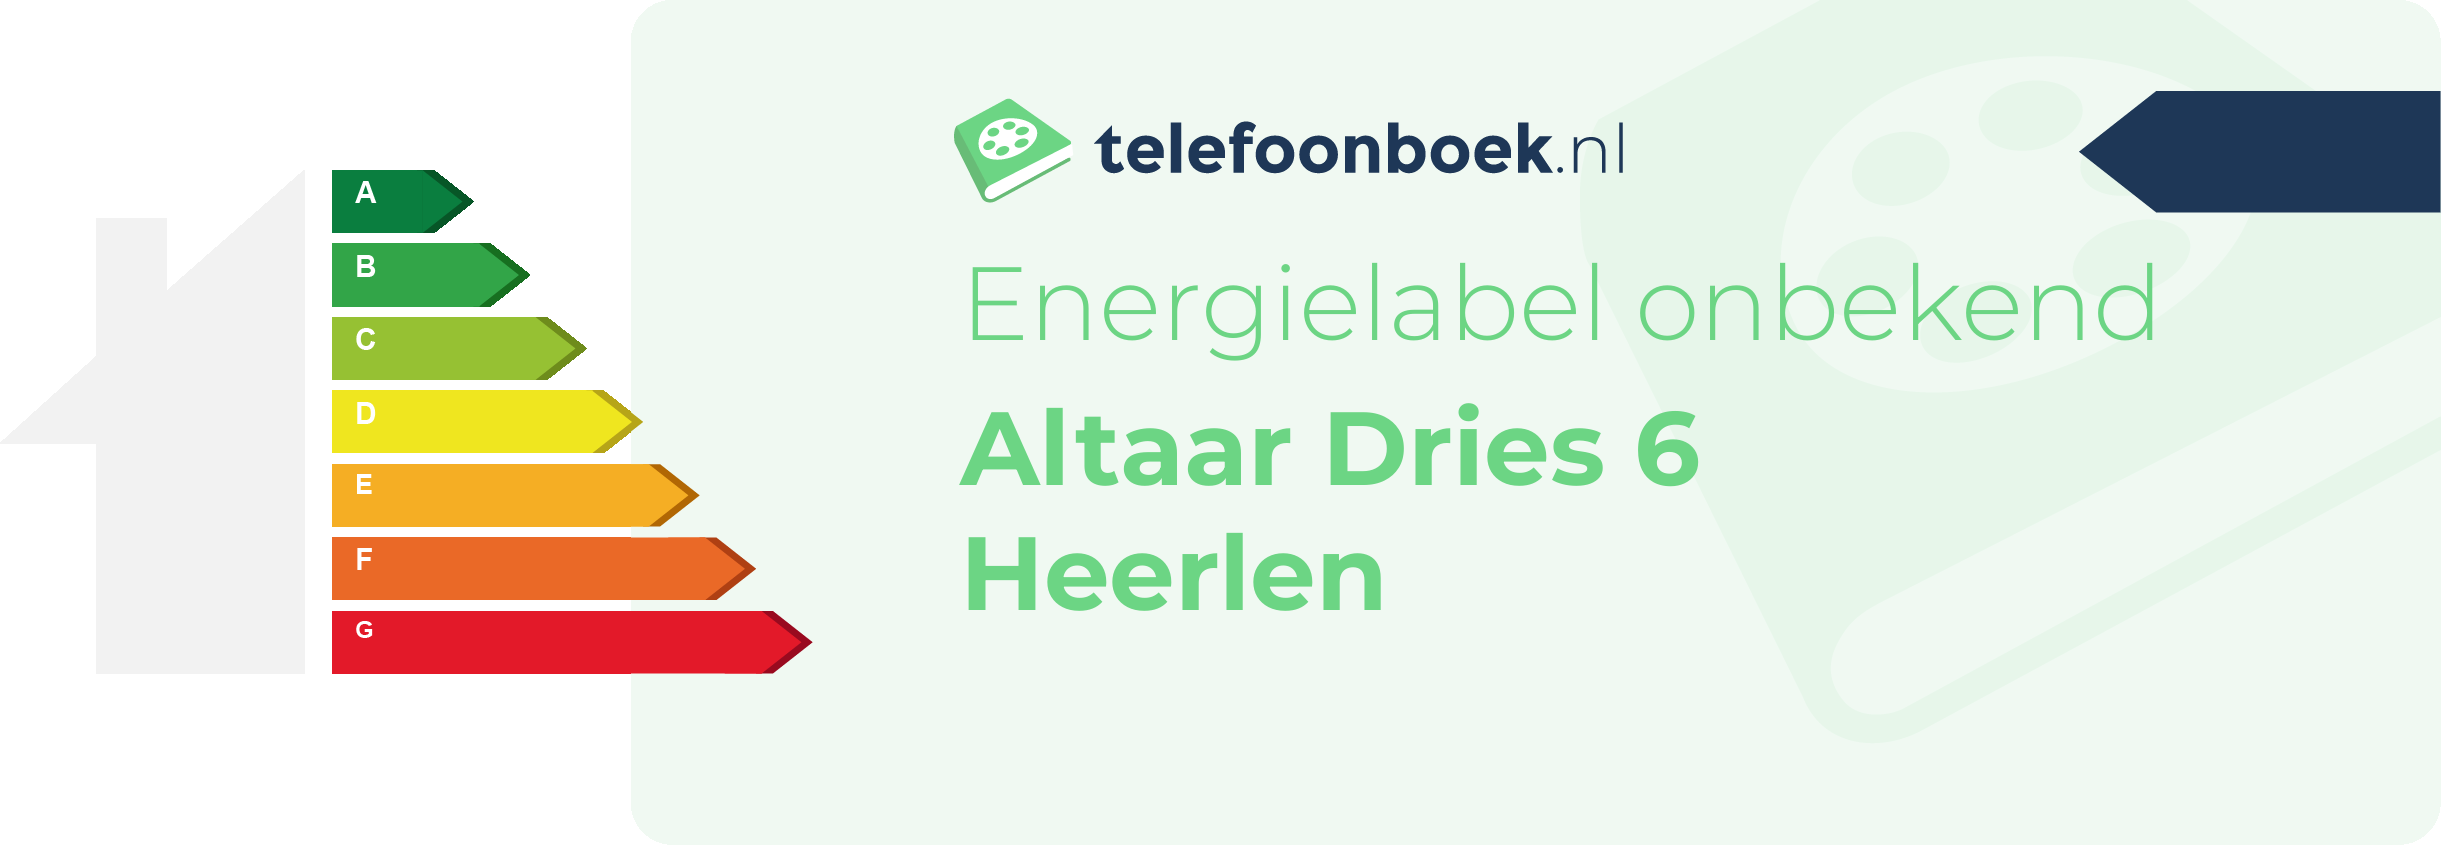 Energielabel Altaar Dries 6 Heerlen